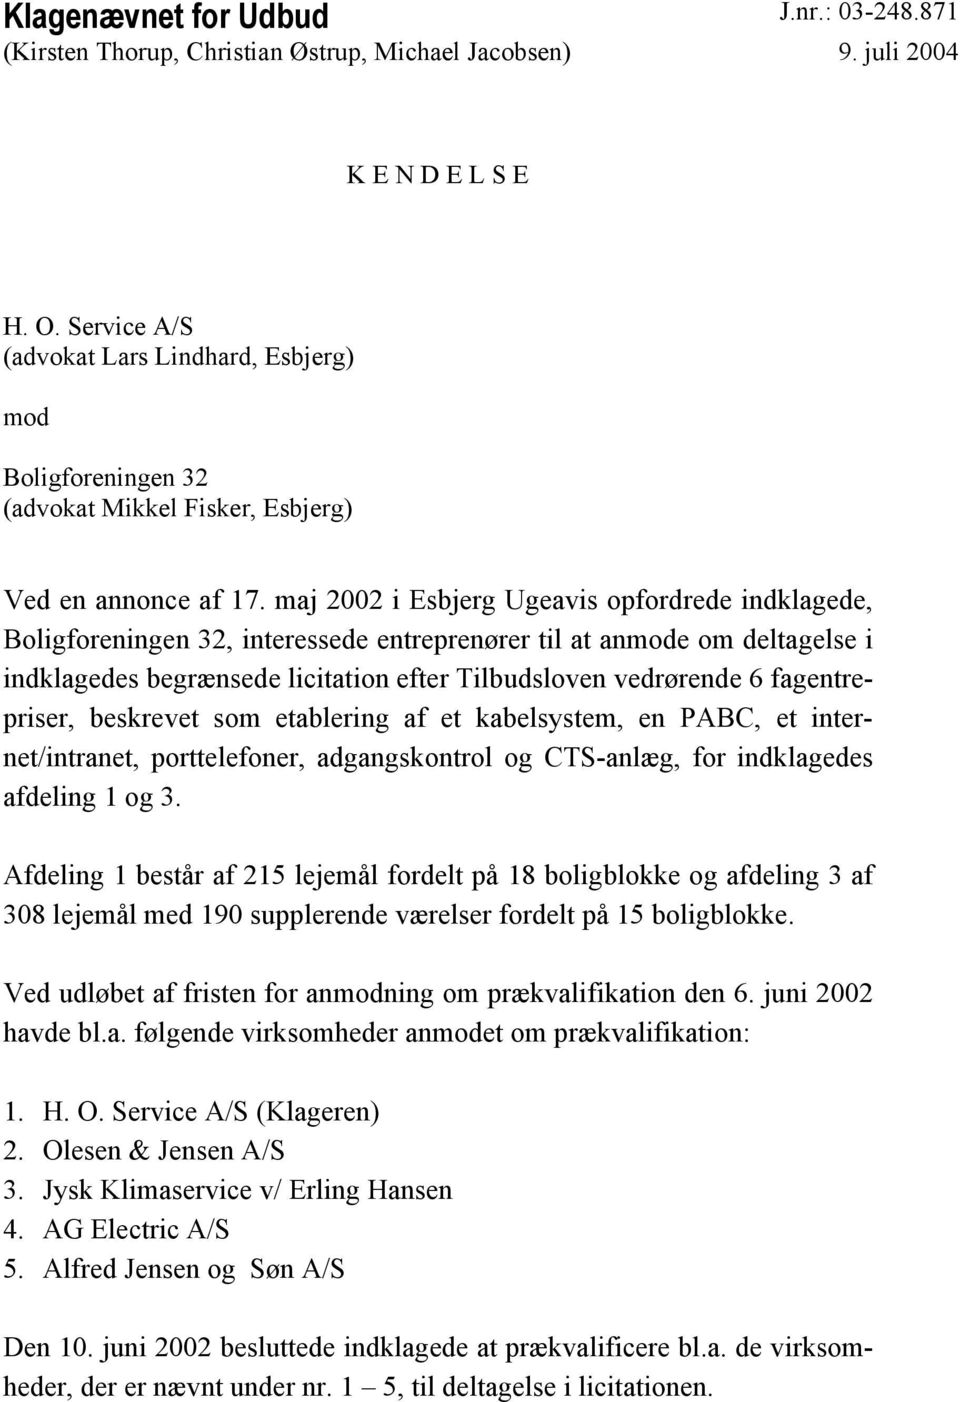 maj 2002 i Esbjerg Ugeavis opfordrede indklagede, Boligforeningen 32, interessede entreprenører til at anmode om deltagelse i indklagedes begrænsede licitation efter Tilbudsloven vedrørende 6